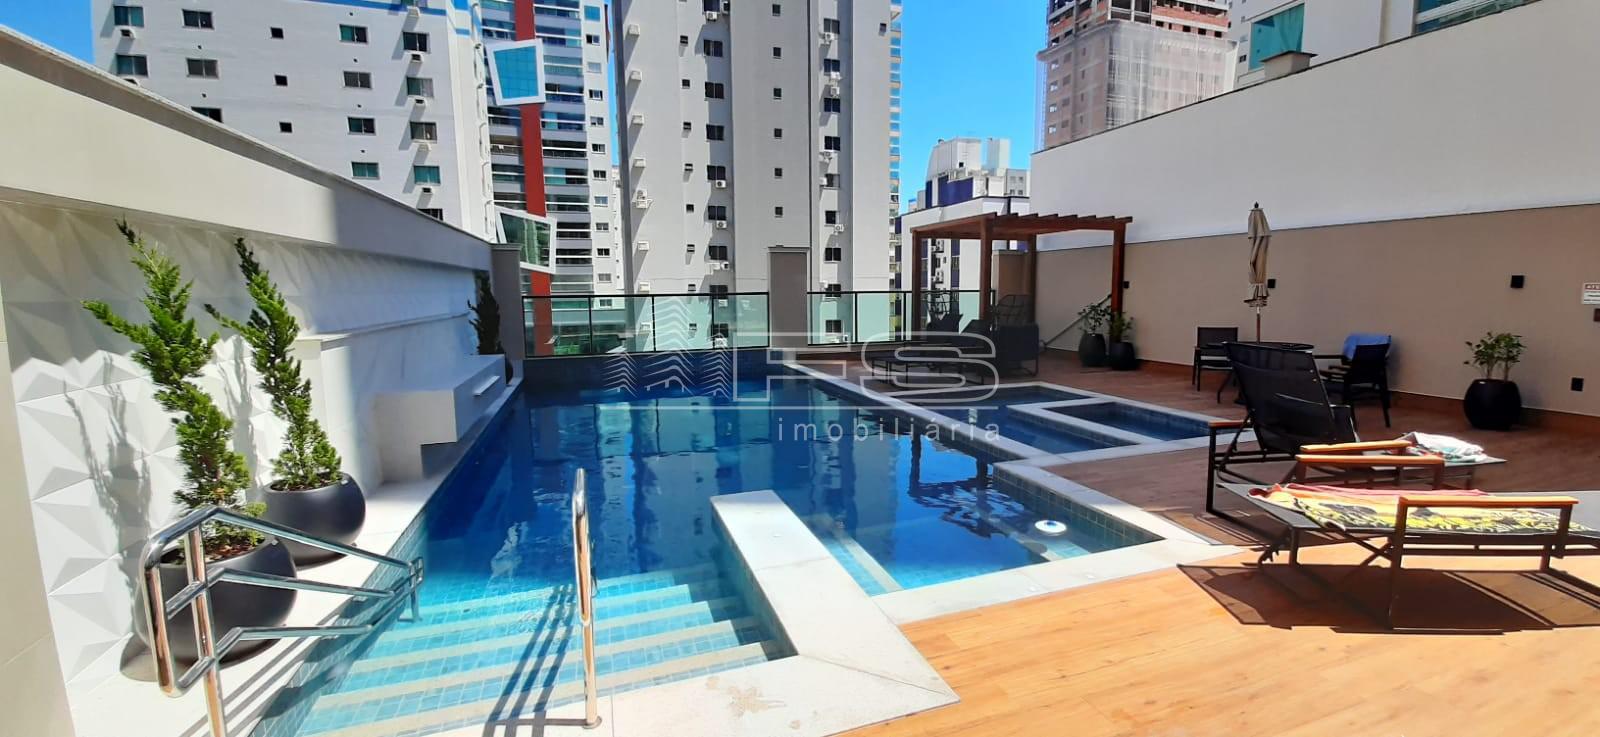 Apartamento com 3 Dormitórios à venda, 113 m² por R$ 1.400.000,00